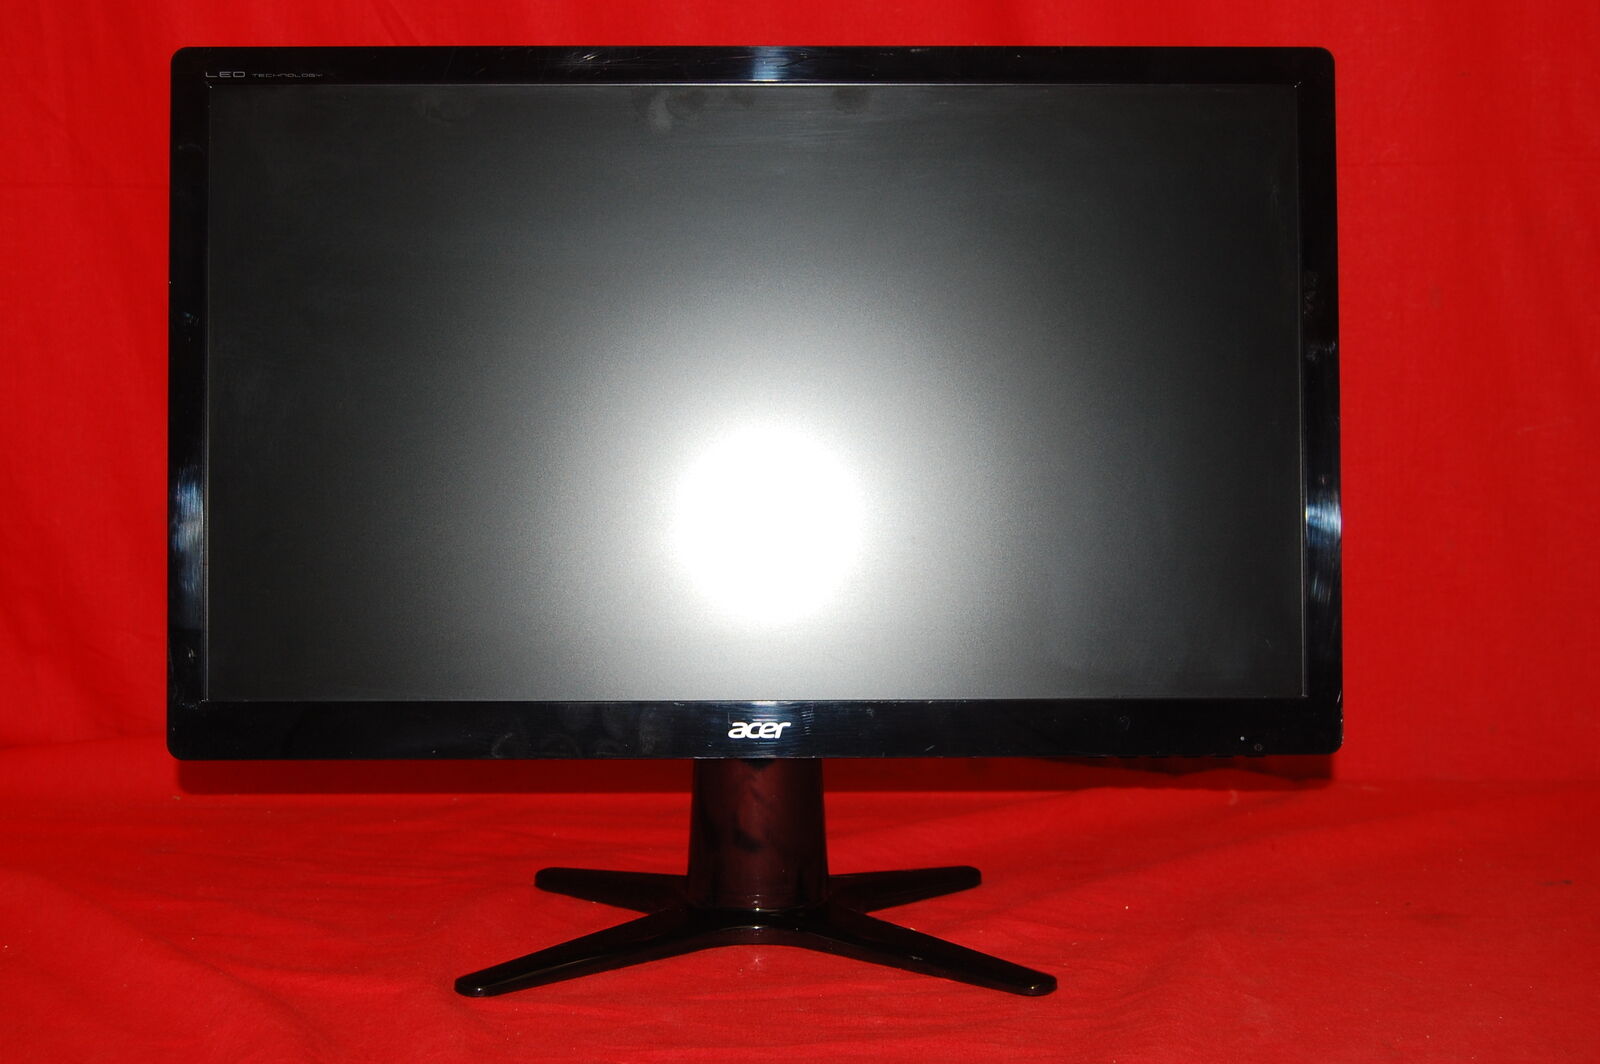 Acer G226HQL 21.5 Inch Screen LED Monitor DVI-D VGA Inputs Black Very Good 0688